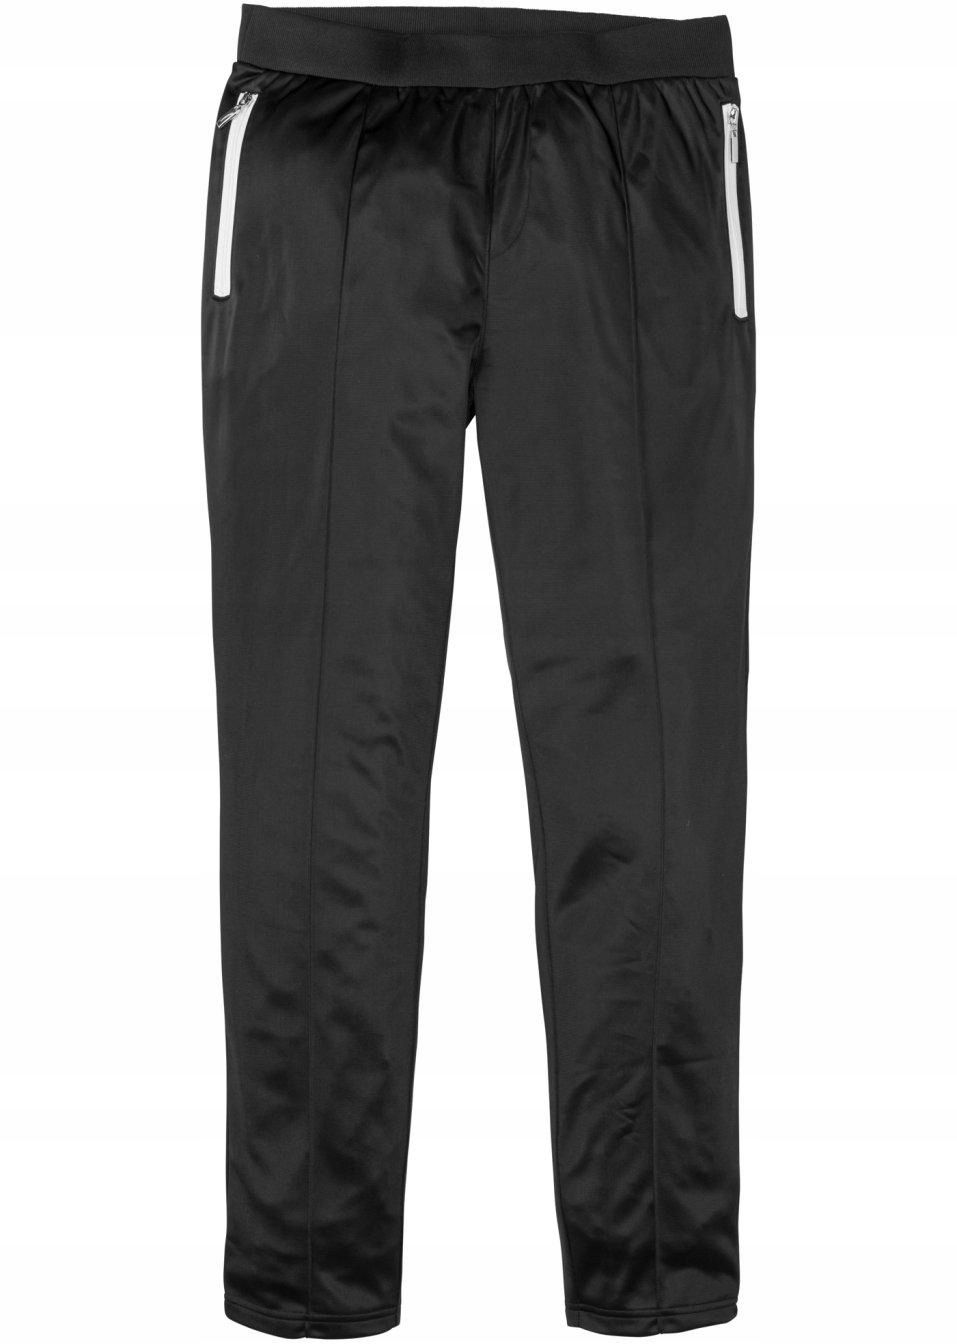 bonprix czarne długie błyszczące sportowe spodnie męskie zamki 60-62